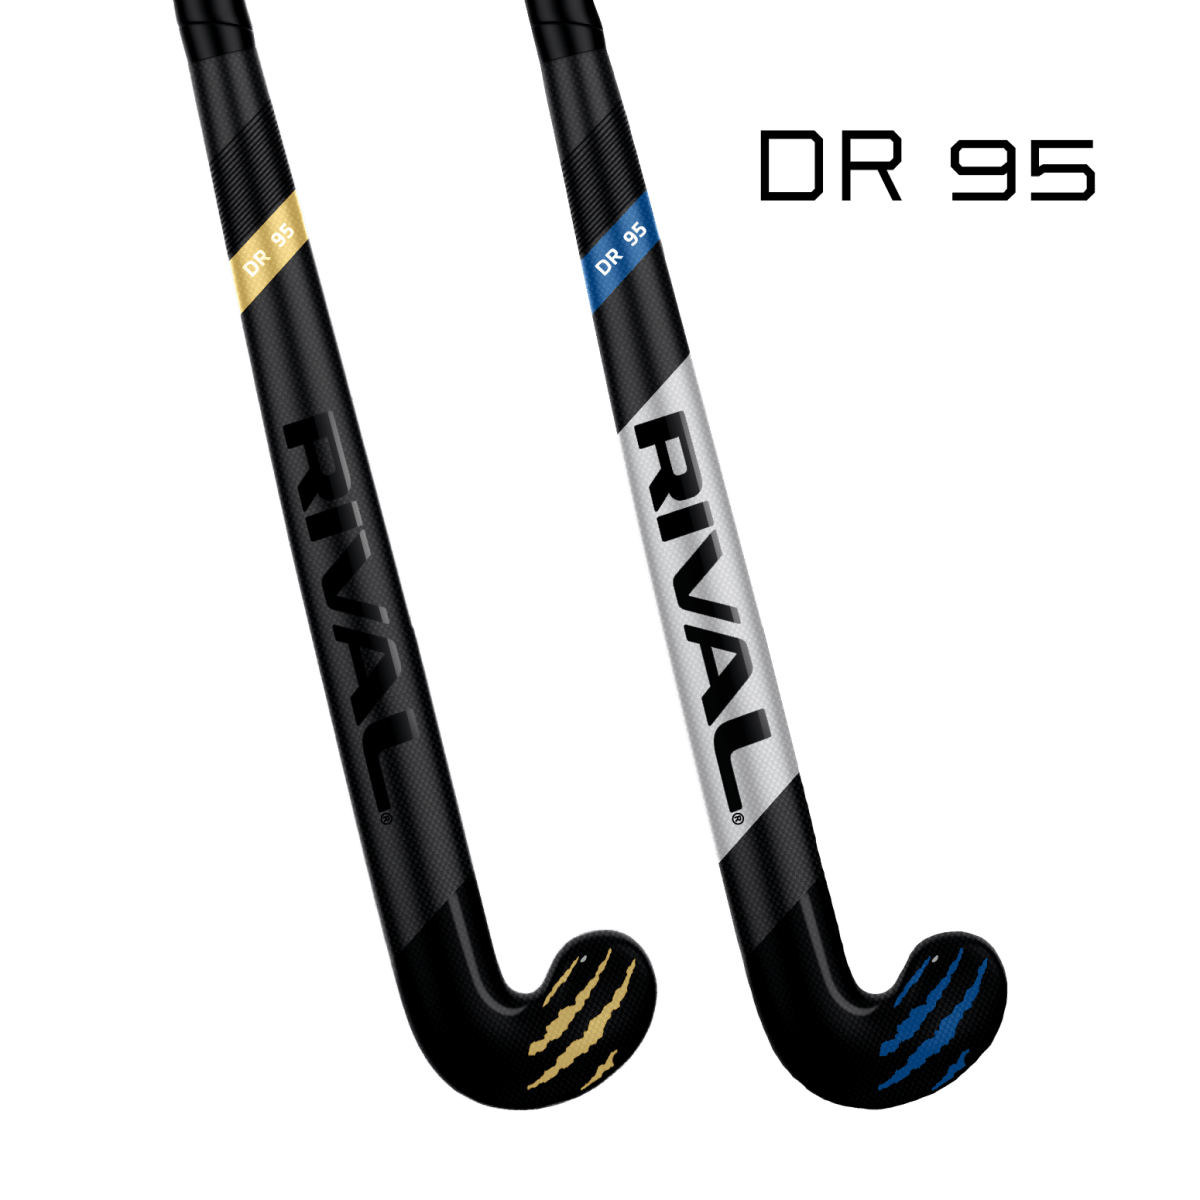 Rival DR 95 - field hockey